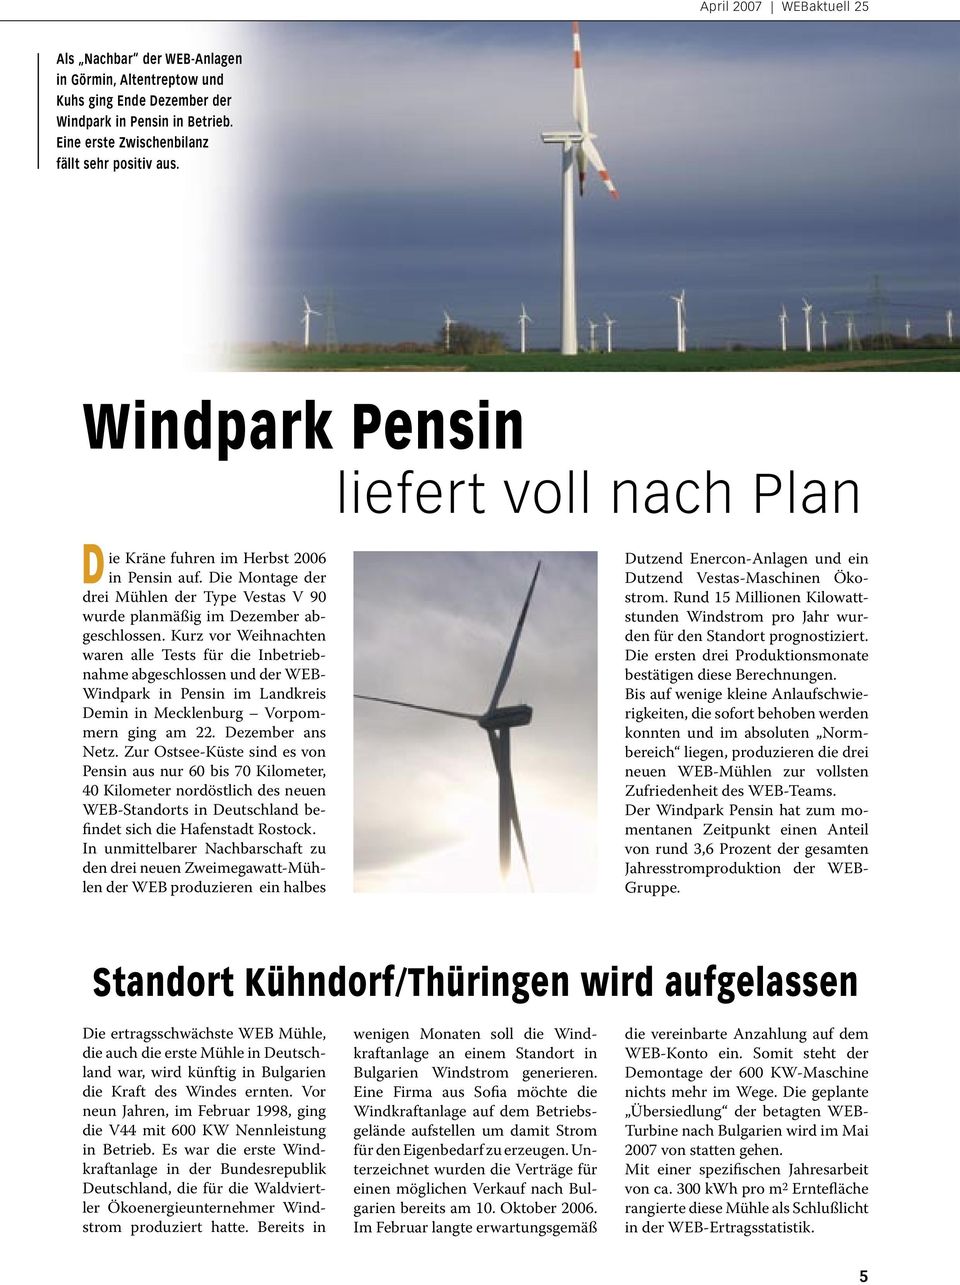 Kurz vor Weihnachten waren alle Tests für die Inbetriebnahme abgeschlossen und der WEB- Windpark in Pensin im Landkreis Demin in Mecklenburg Vorpommern ging am 22. Dezember ans Netz.